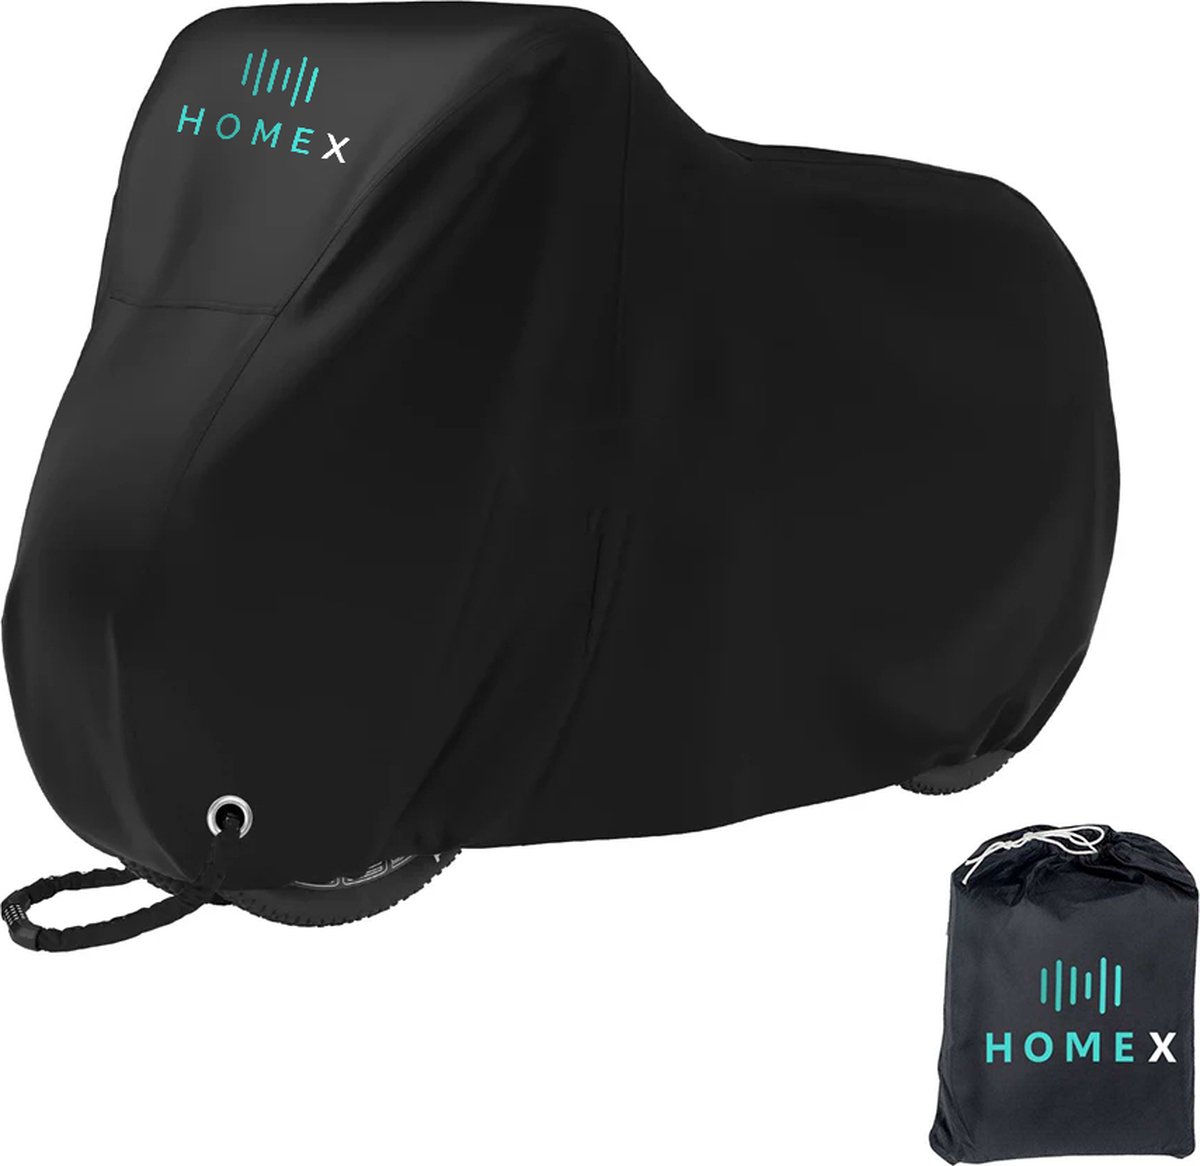 HomeX Fietshoes - Universeel voor alle fietsen - Fietshoes voor 1 of 2 fietsen - Hoes voor scooter - 210D Oxford - Waterdicht - Ultra sterk - Incl. opbergzak